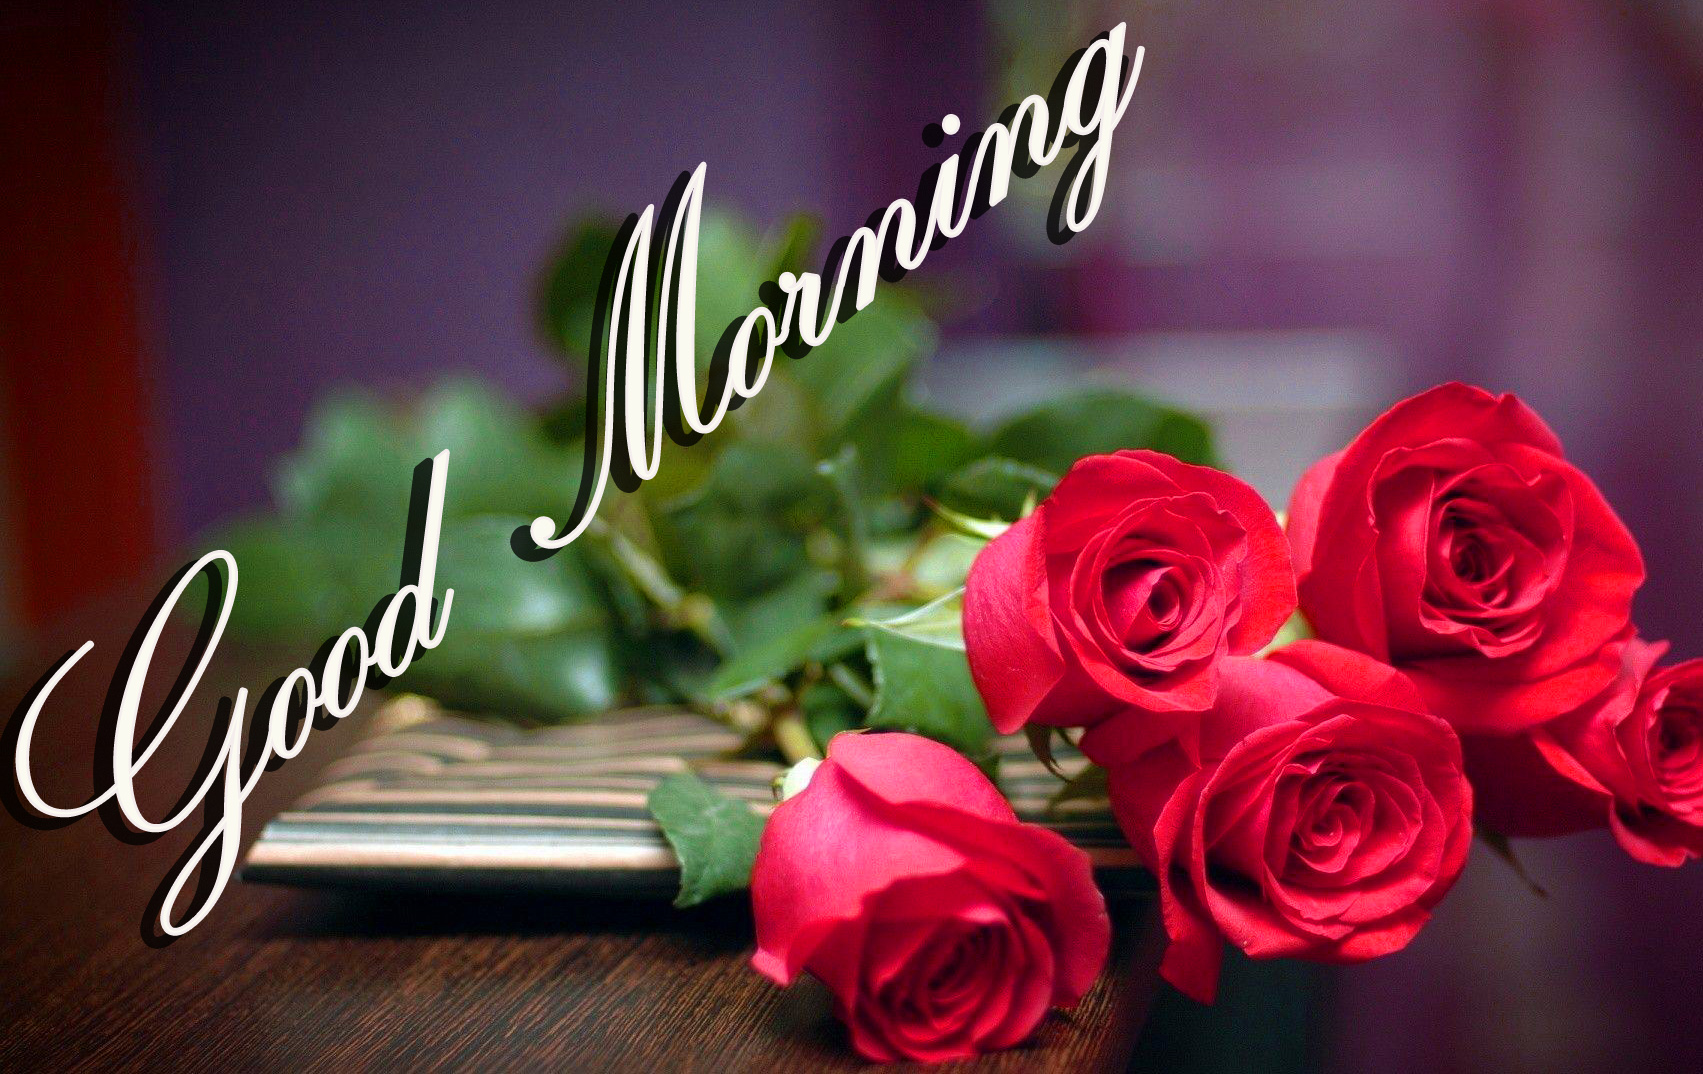 おはよう壁紙ダウンロード,テキスト,庭のバラ,フォント,花弁,ピンク